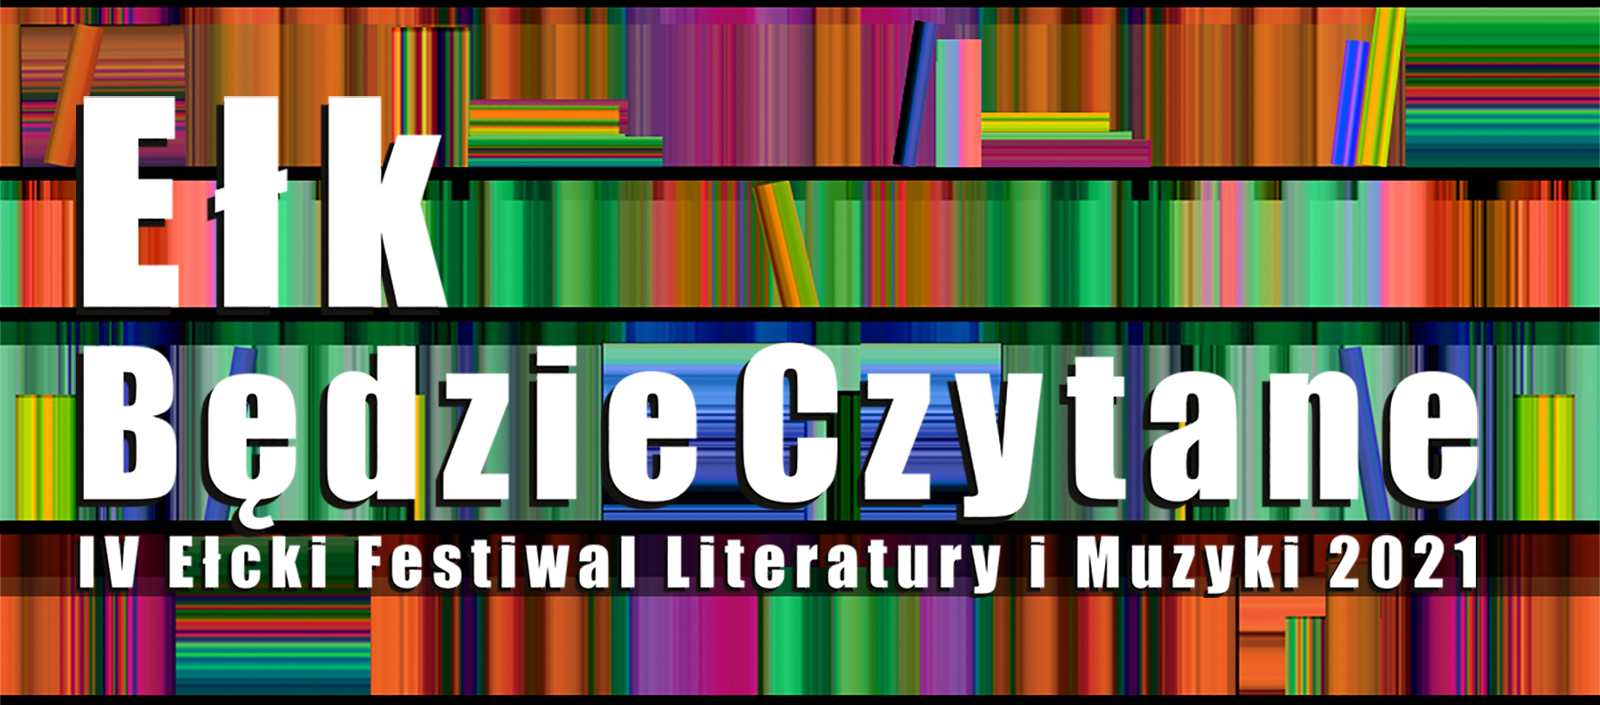 IV edycja Ełckiego Festiwalu Literatury i Muzyki - Ełk, będzie czytane! Spotkania autorskie, koncerty, warsztaty